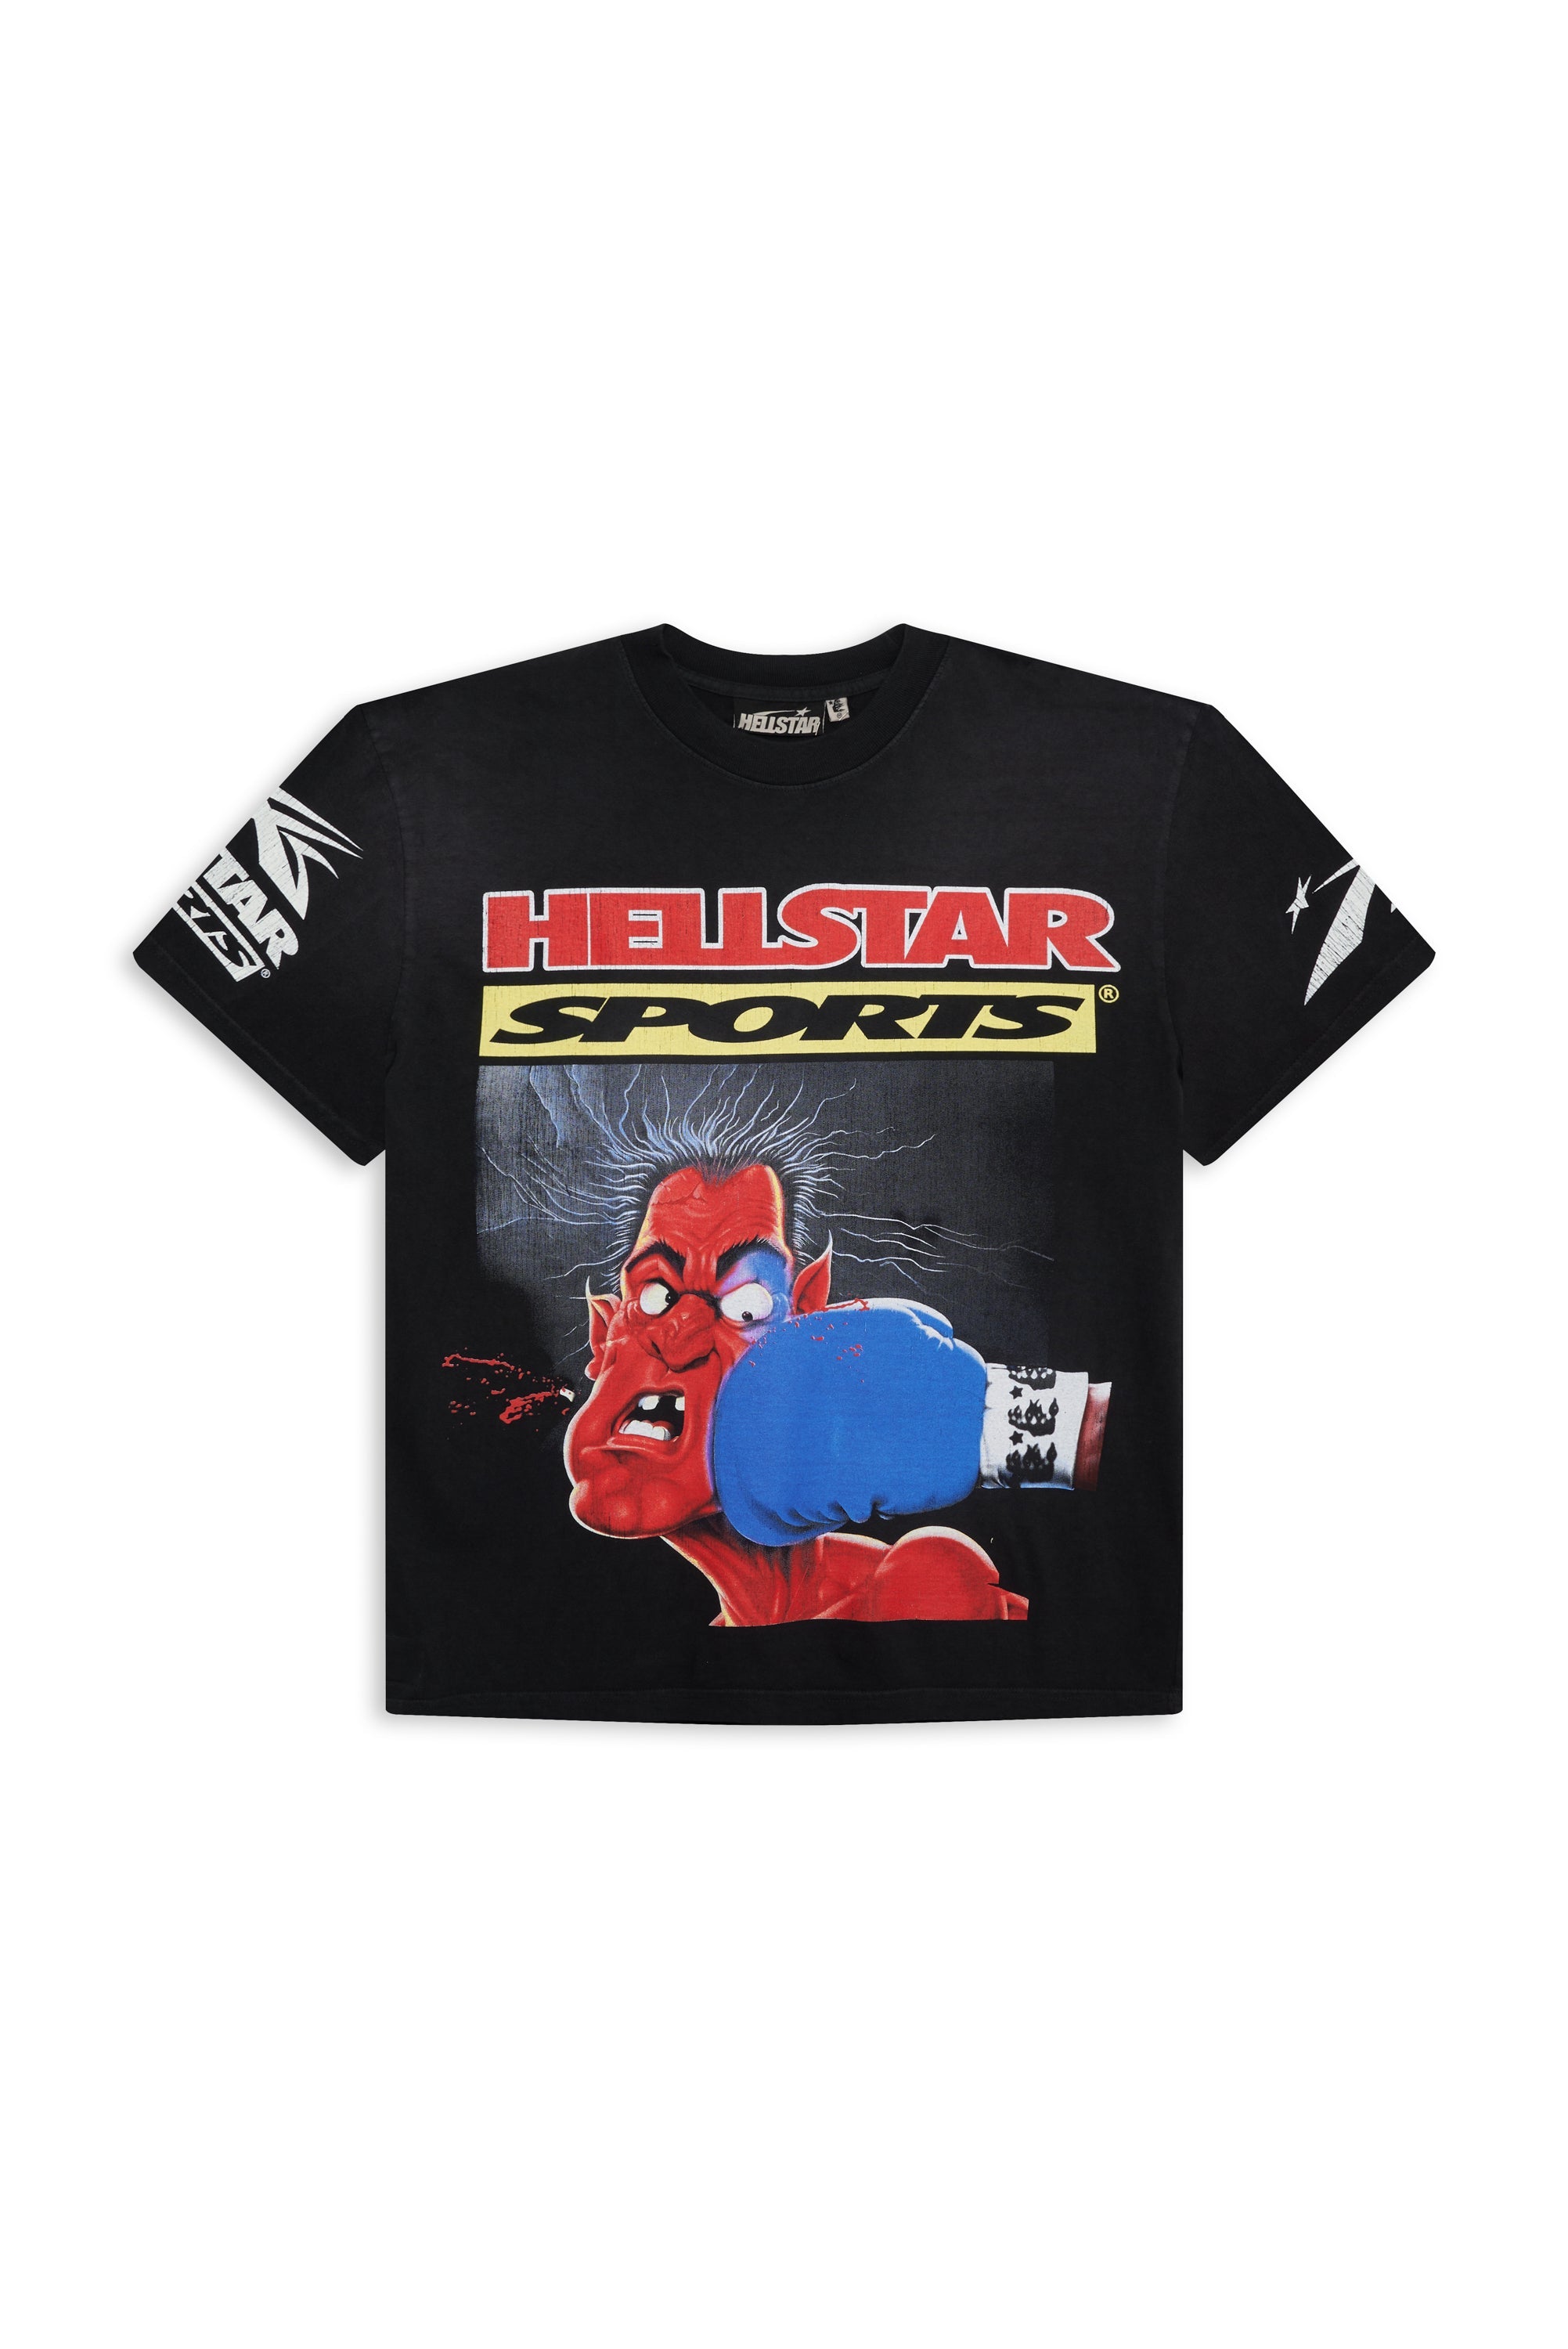 Hellstar Knock-Out Tee